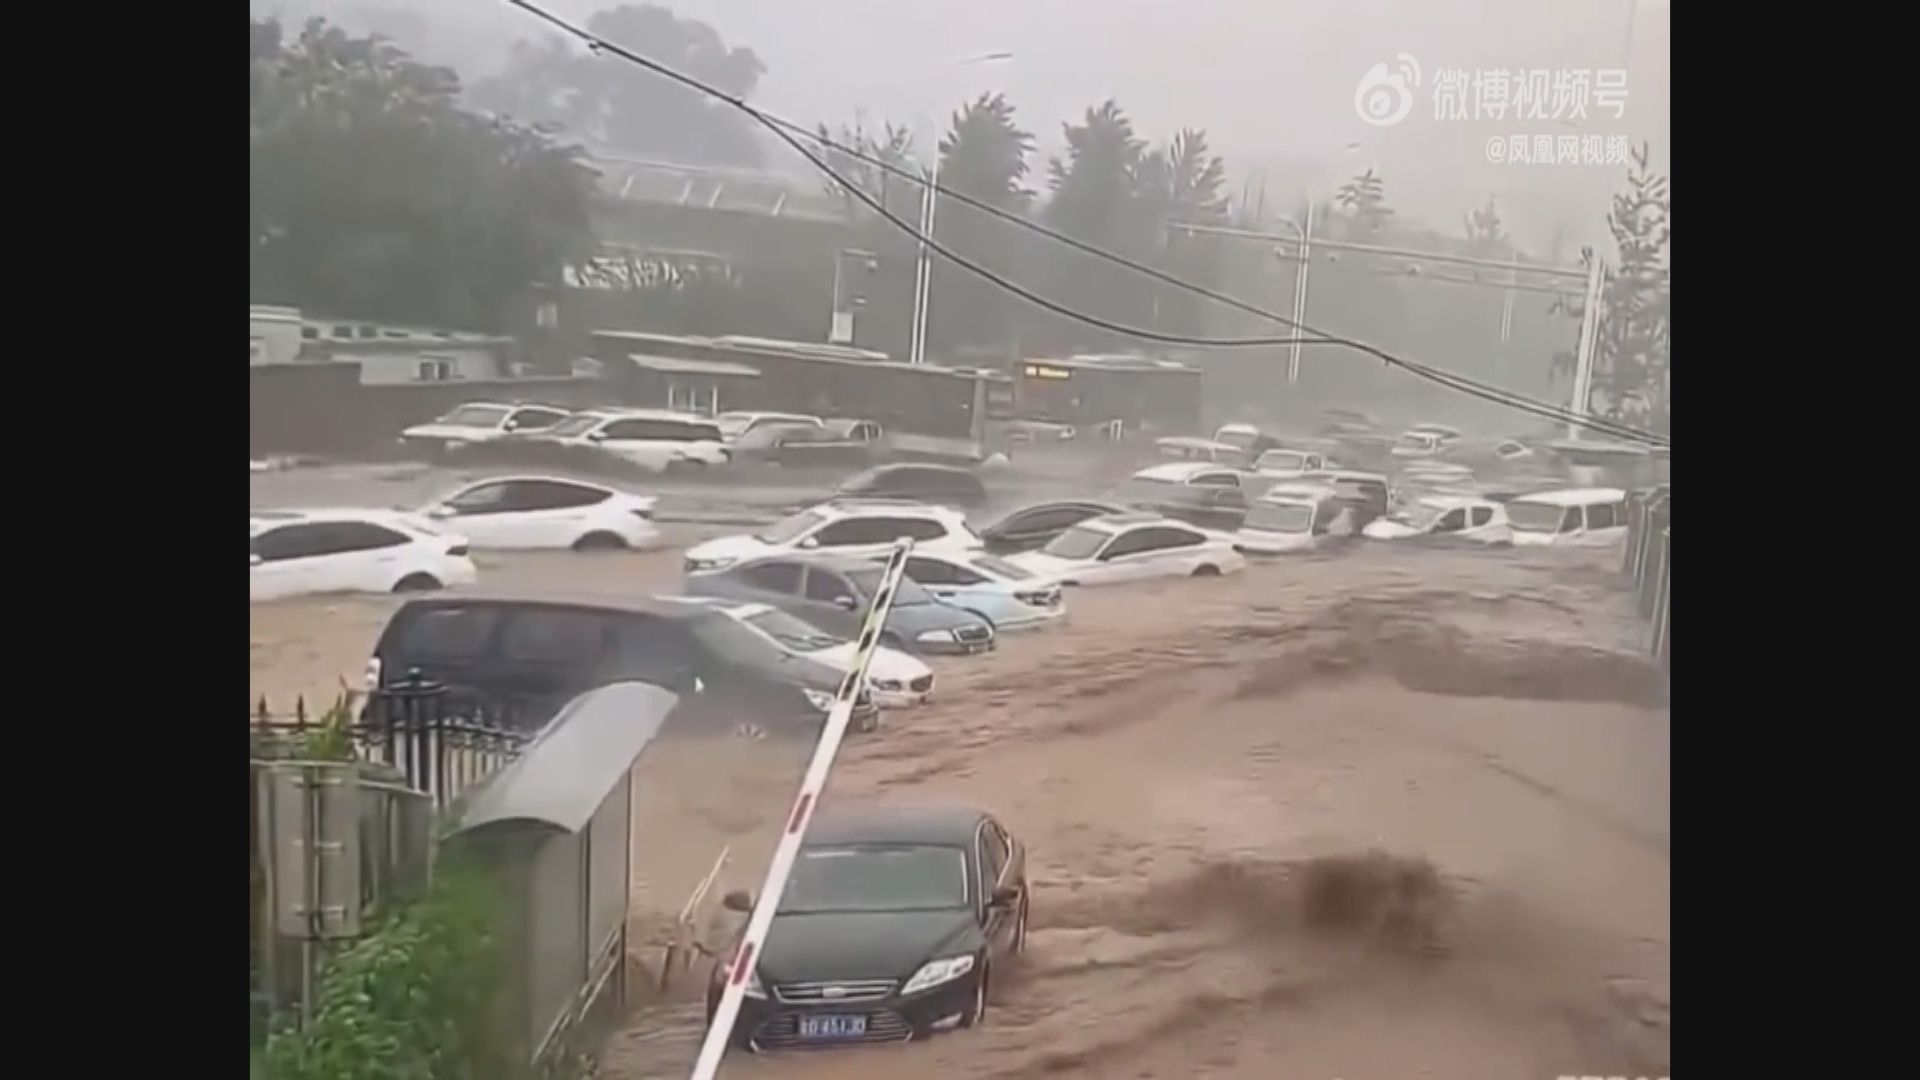 北京門頭溝山洪暴發 多輛汽車被沖走